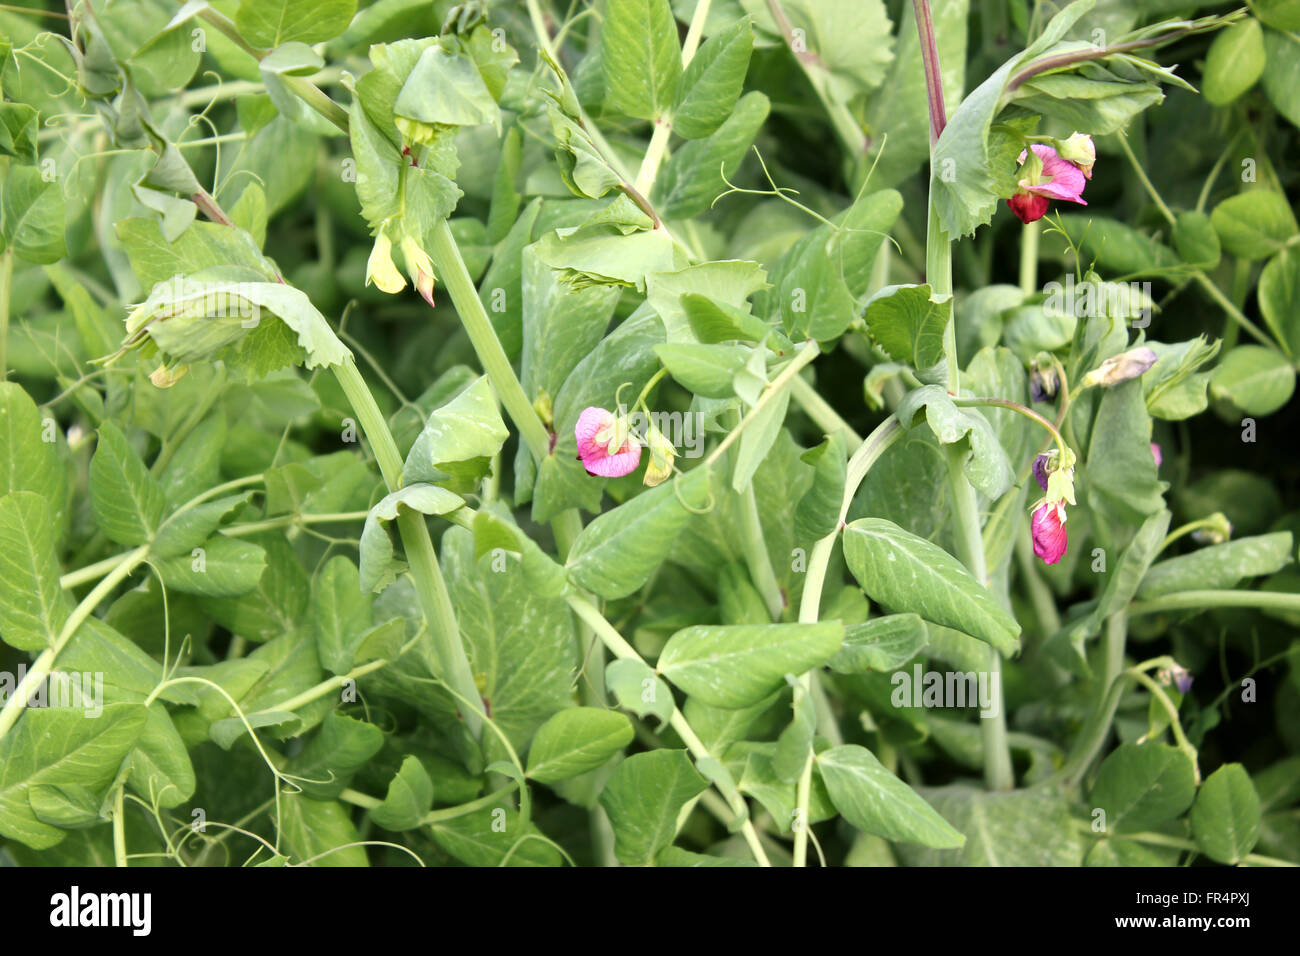 Pisum sativum, zucchero pisello, famiglia Fabaceae, coltivate erbe annuali con pinnate foglie composte, terminale viticci, fiori di colore rosso Foto Stock